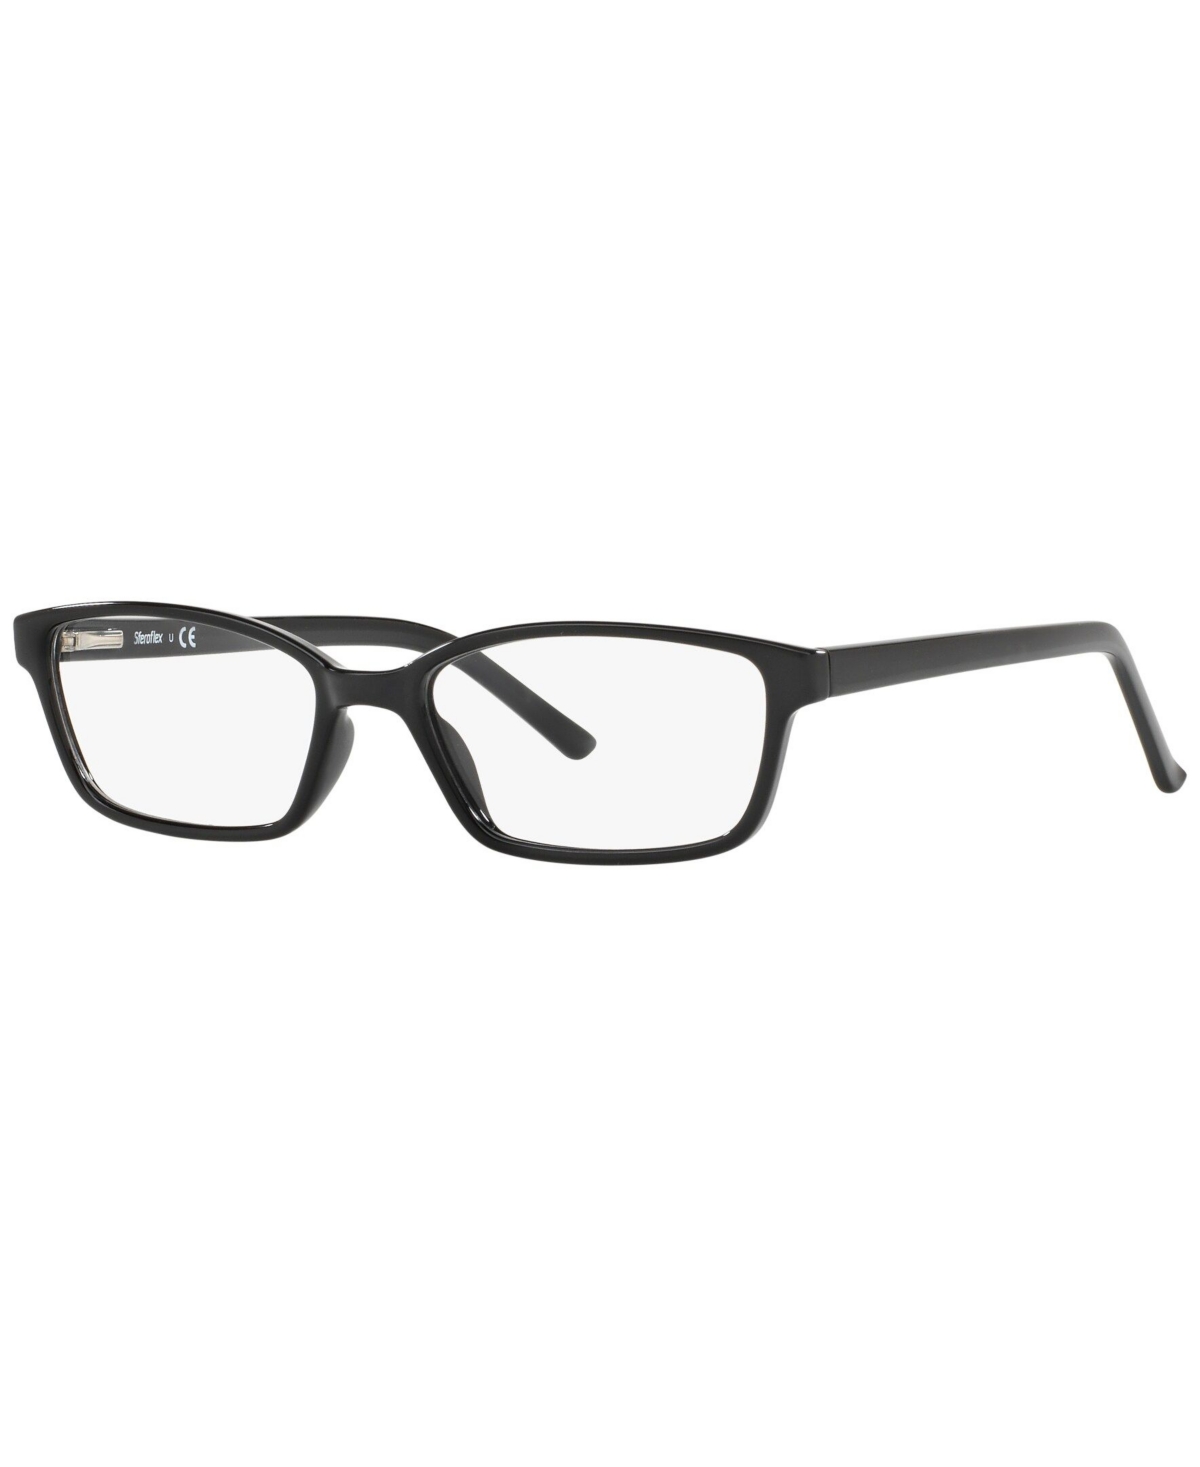 SF1572 Women's Rectangle Eyeglasses - Black